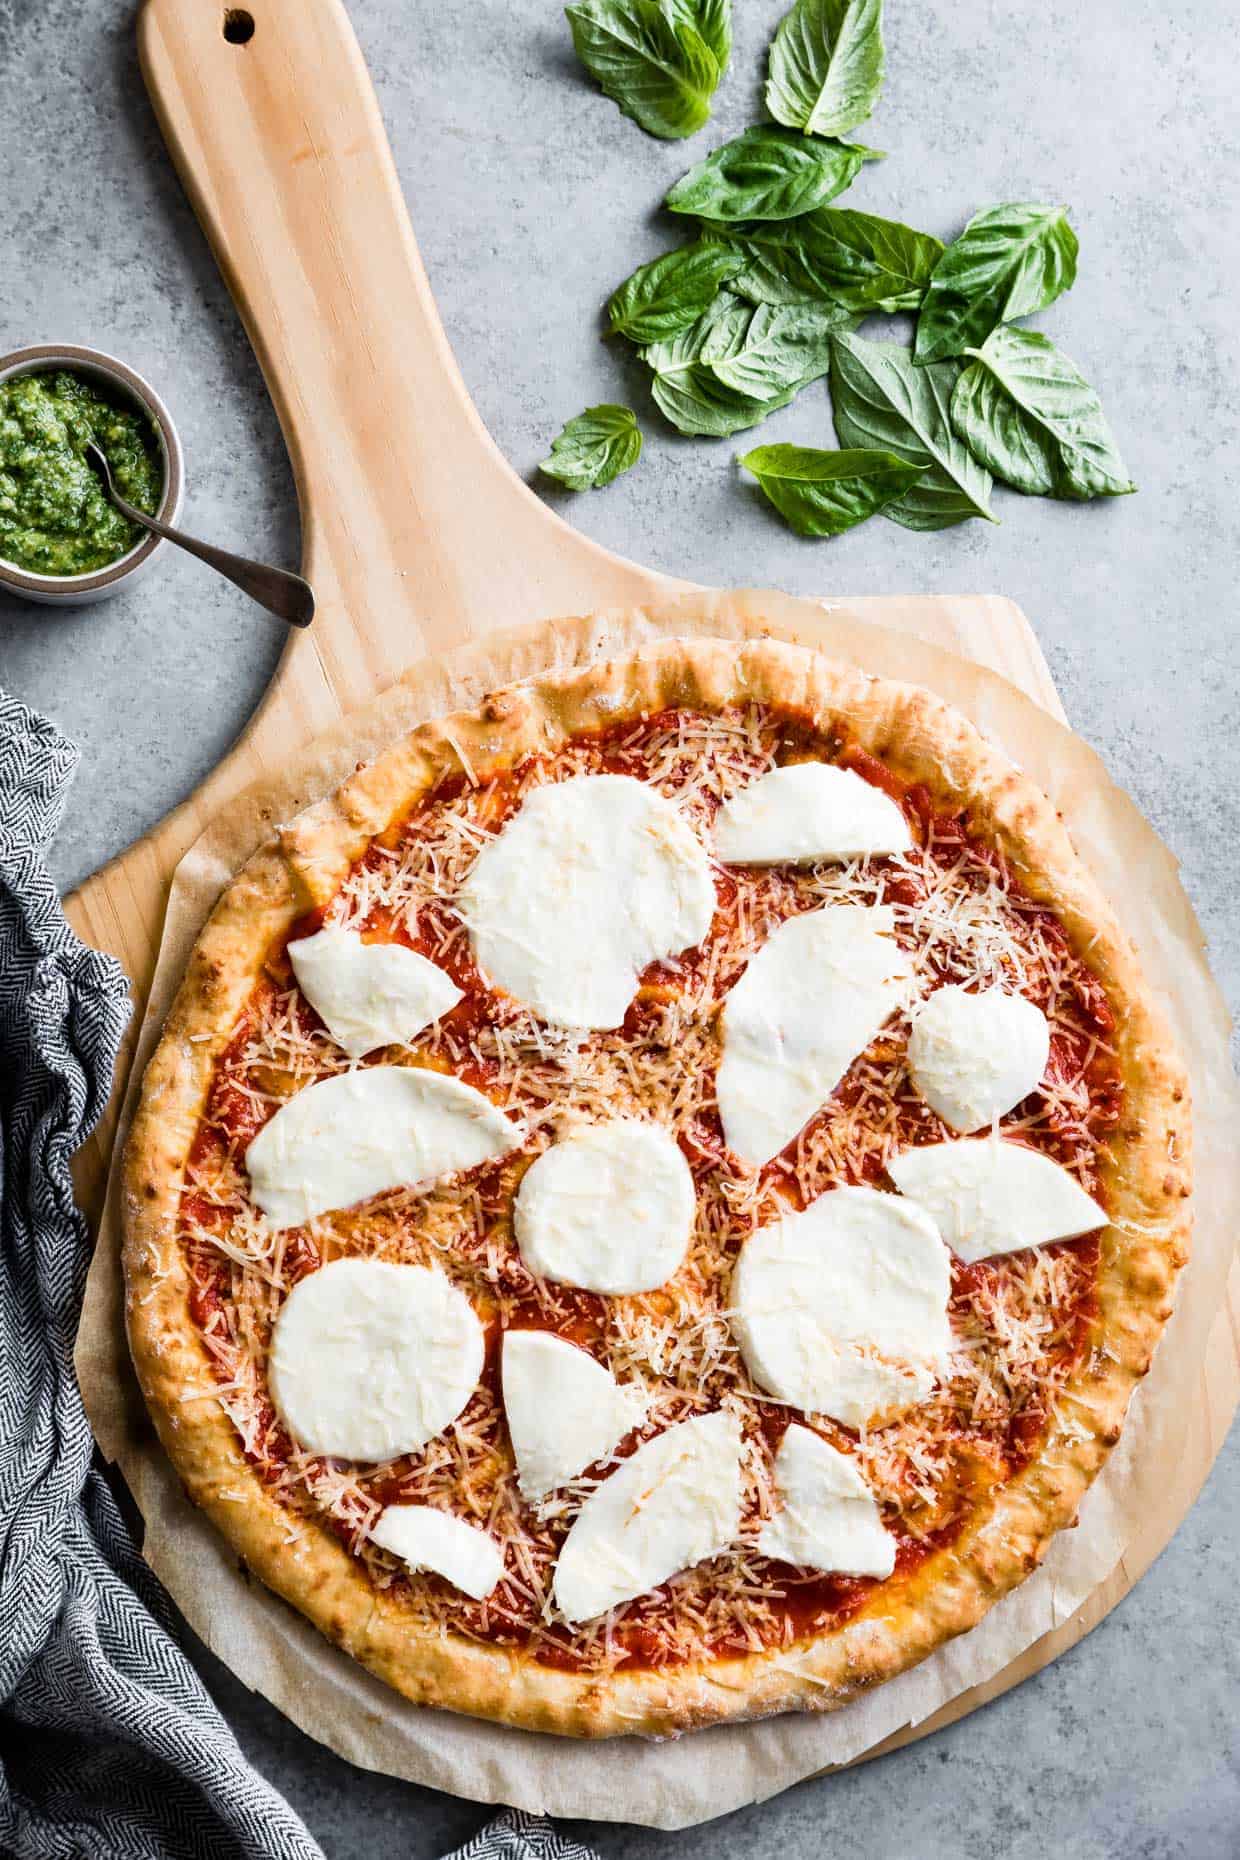 The Best Gluten-Free Pizza Crust Recipe